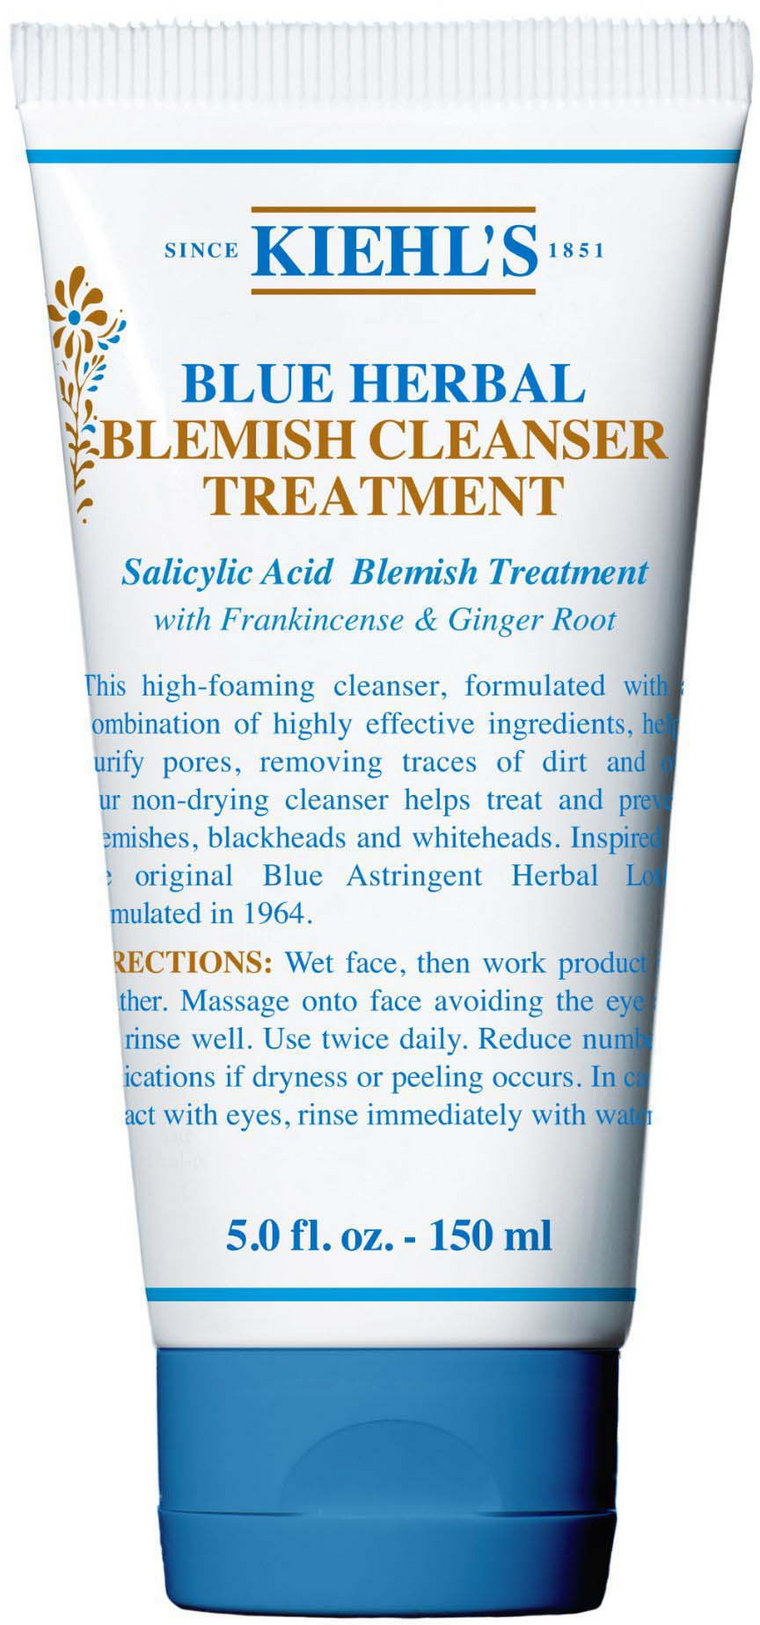 Blue Herbal Blemish Cleanser Treatment - Ziołowy żel oczyszczający do twarzy